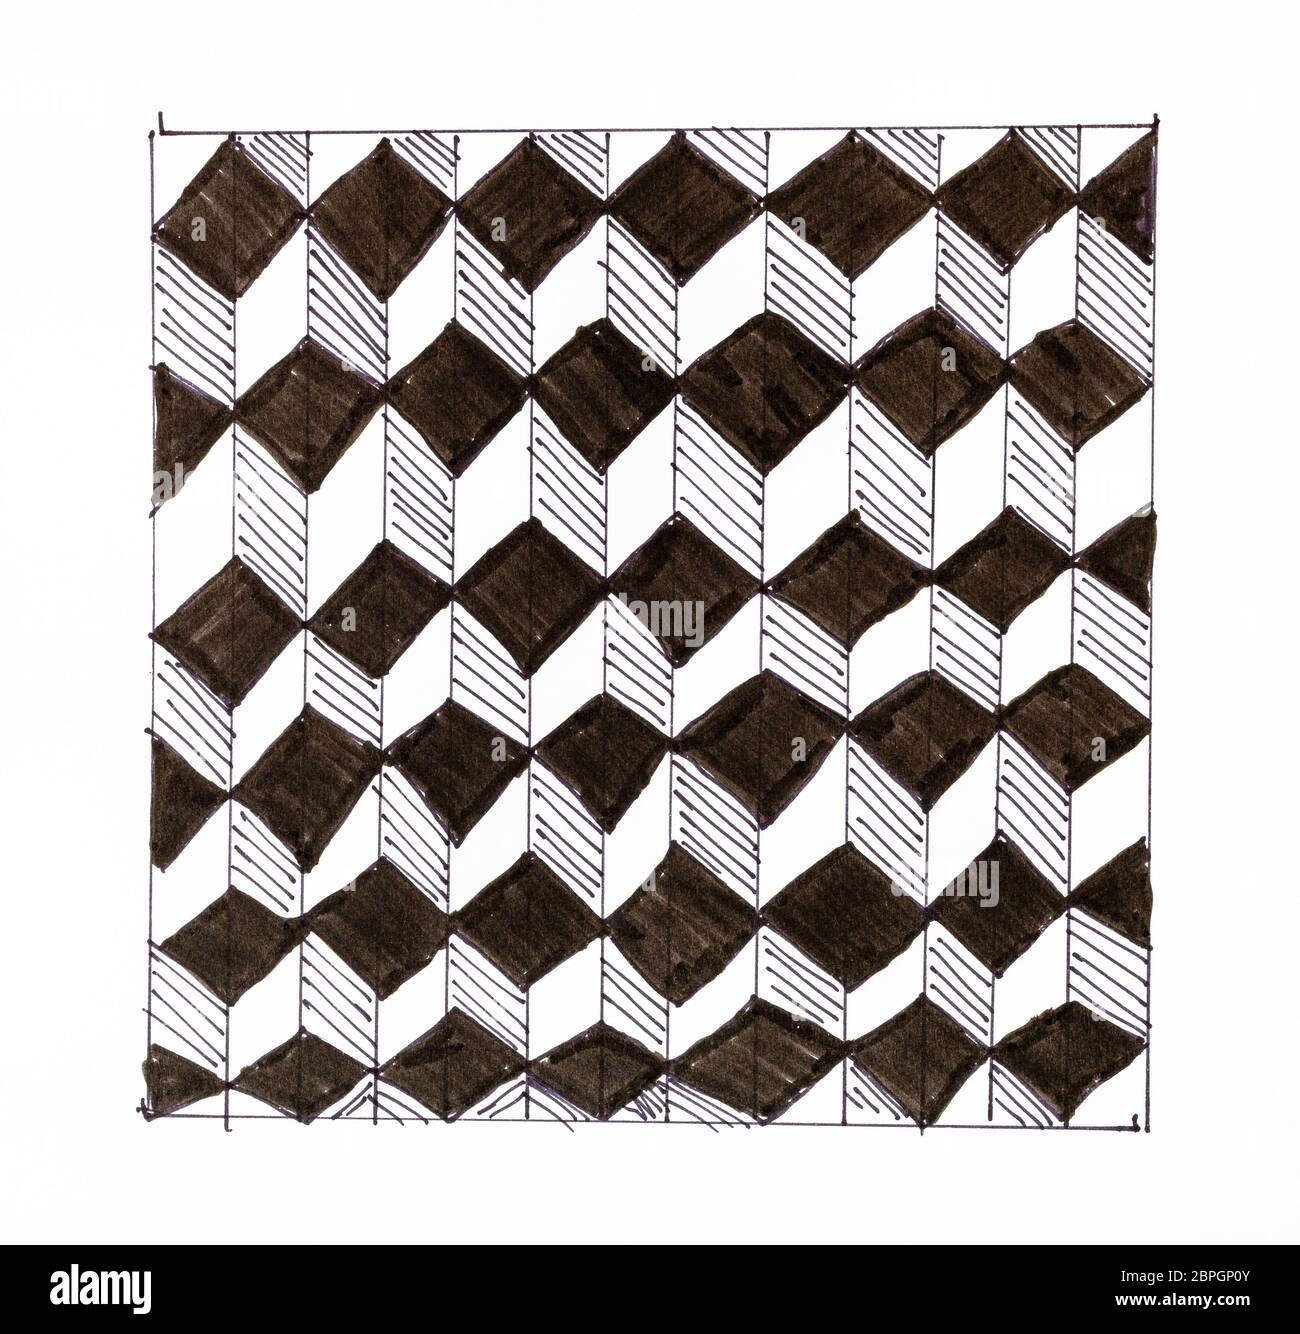 Abstrakte handgezeichnete Muster auf weißem Papier mit Filzstift - Schwarz-weiß karierten Ornament von Cubes Stockfoto